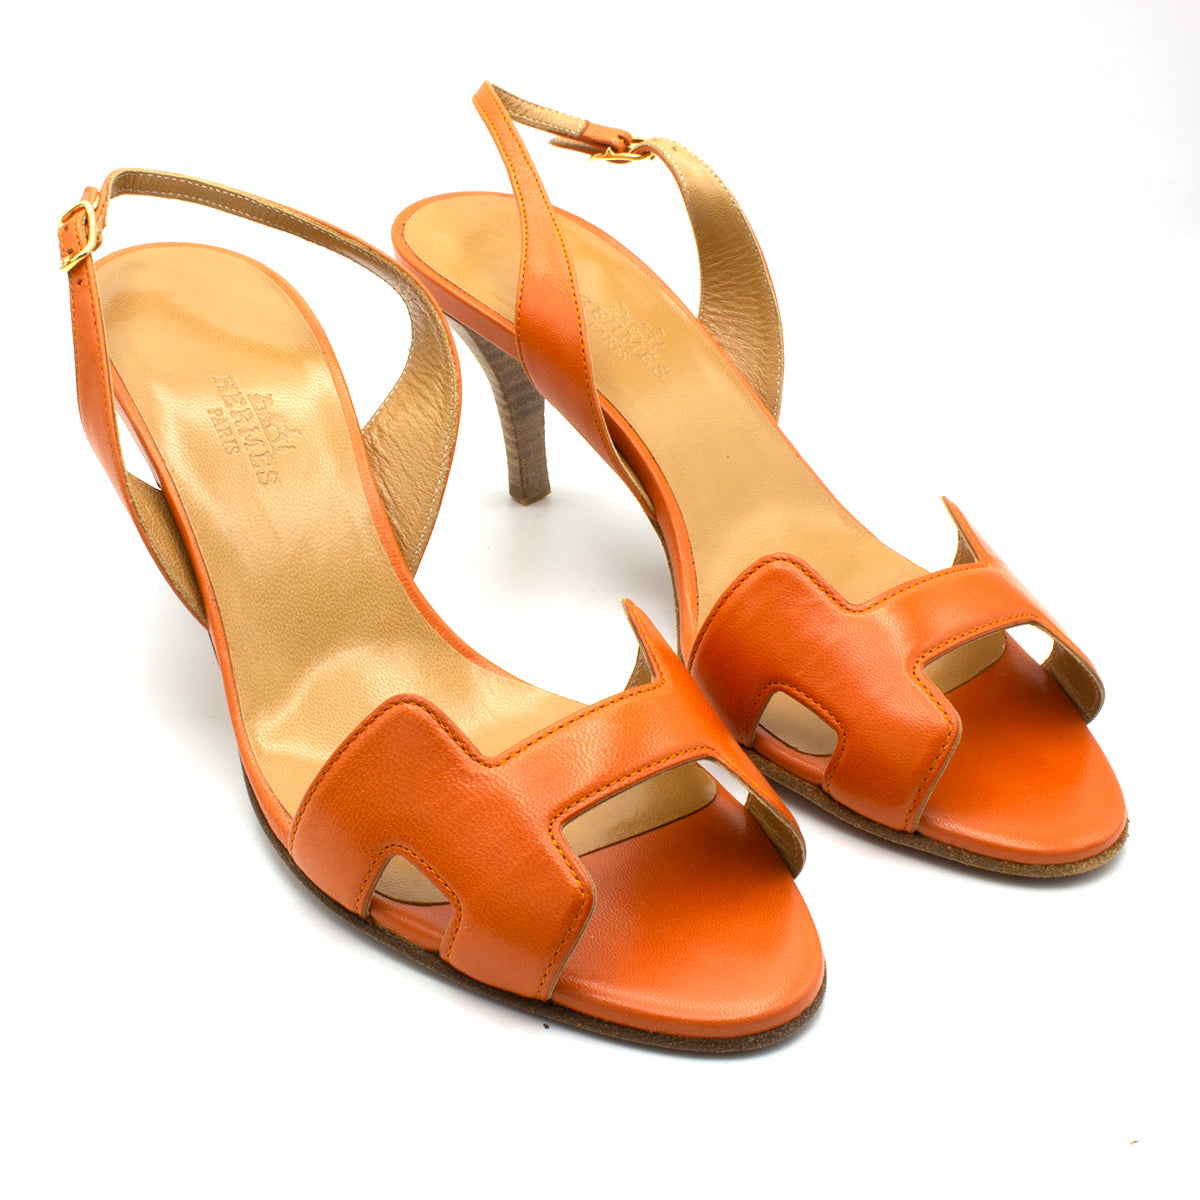 Hermes sandals orange shoes - Luxe \u0026 Em